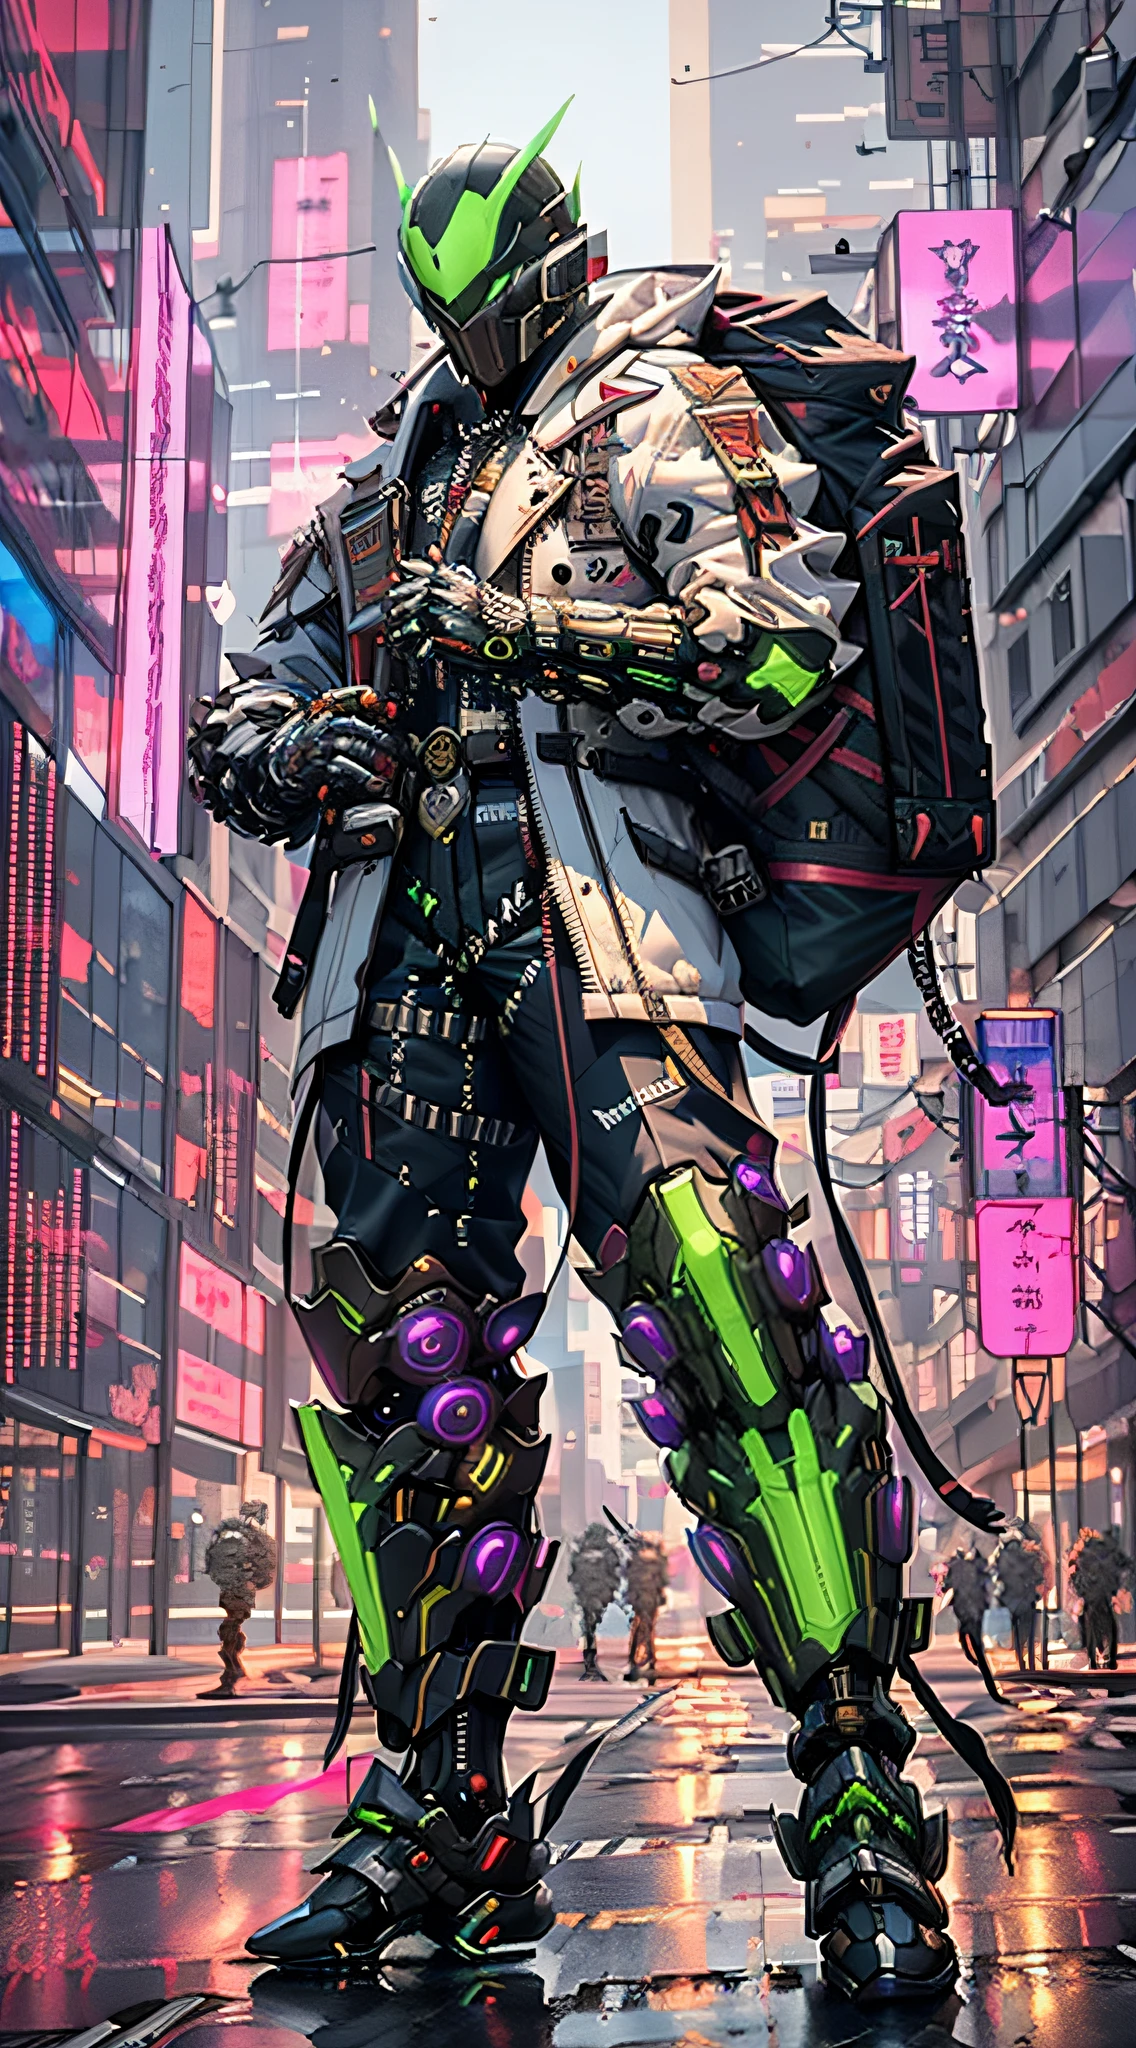 Es gibt einen Mann in einem schwarz-grünen Outfit mit einem Rucksack, cyberpunk streetwear, cyberpunk suit, cyberpunk street goon, cyberpunk wearing, cyberpunk techwear, muted cyberpunk style, has cyberpunk style, style of cyberpunk, Cyberpunk-Streetwear tragen, cyberpunk soldier, hyper-realistic cyberpunk style, Cyberpunk-Charakterdesign, all black cyberpunk clothes, Krähe in Cyber-Rüstung, cyberpunk clothes